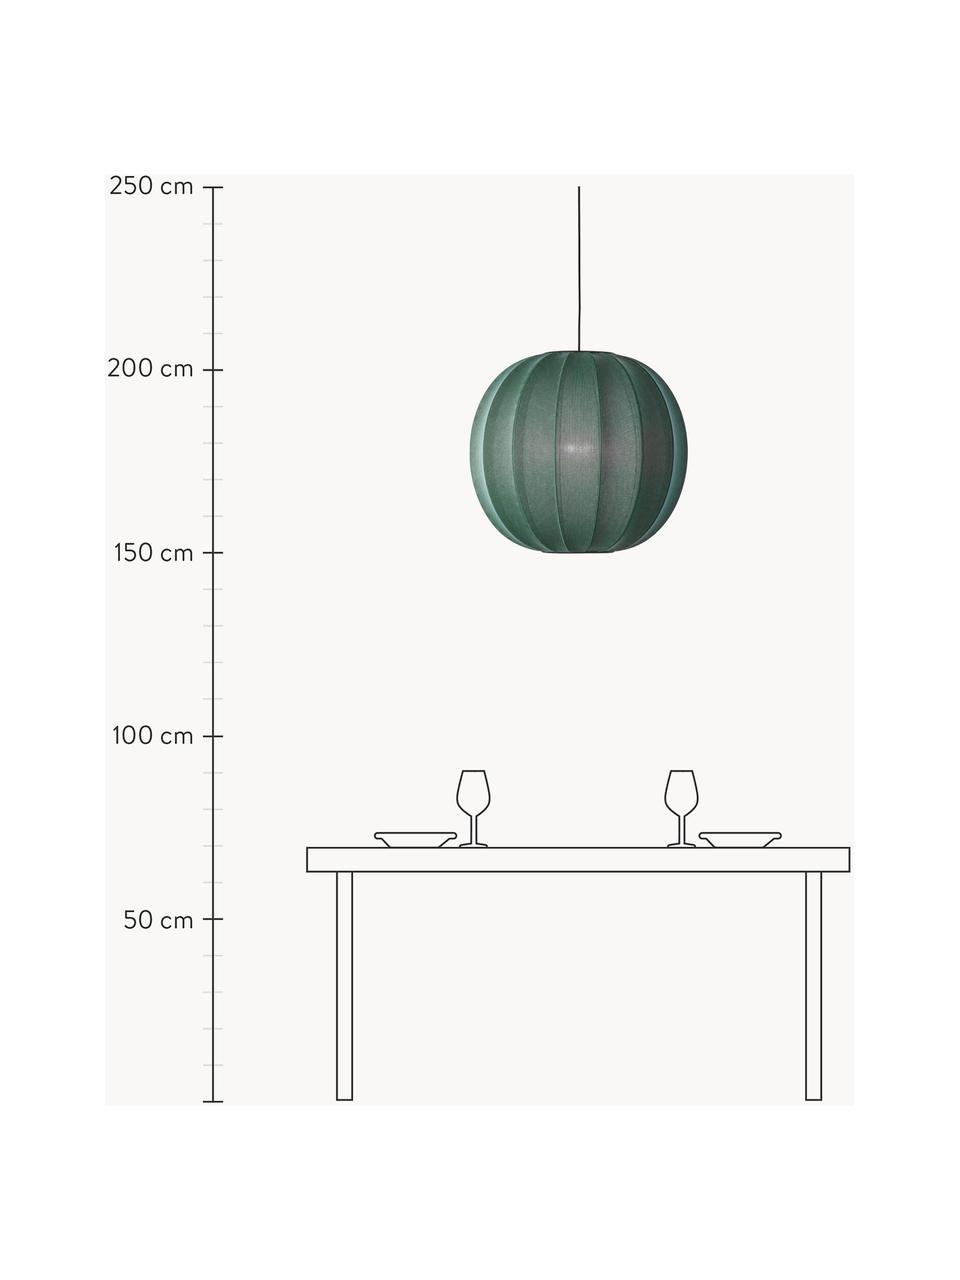 Lampada a sospensione Knit-Wit, Paralume: fibra sintetica, Verde scuro, Ø 45 x Alt. 36 cm